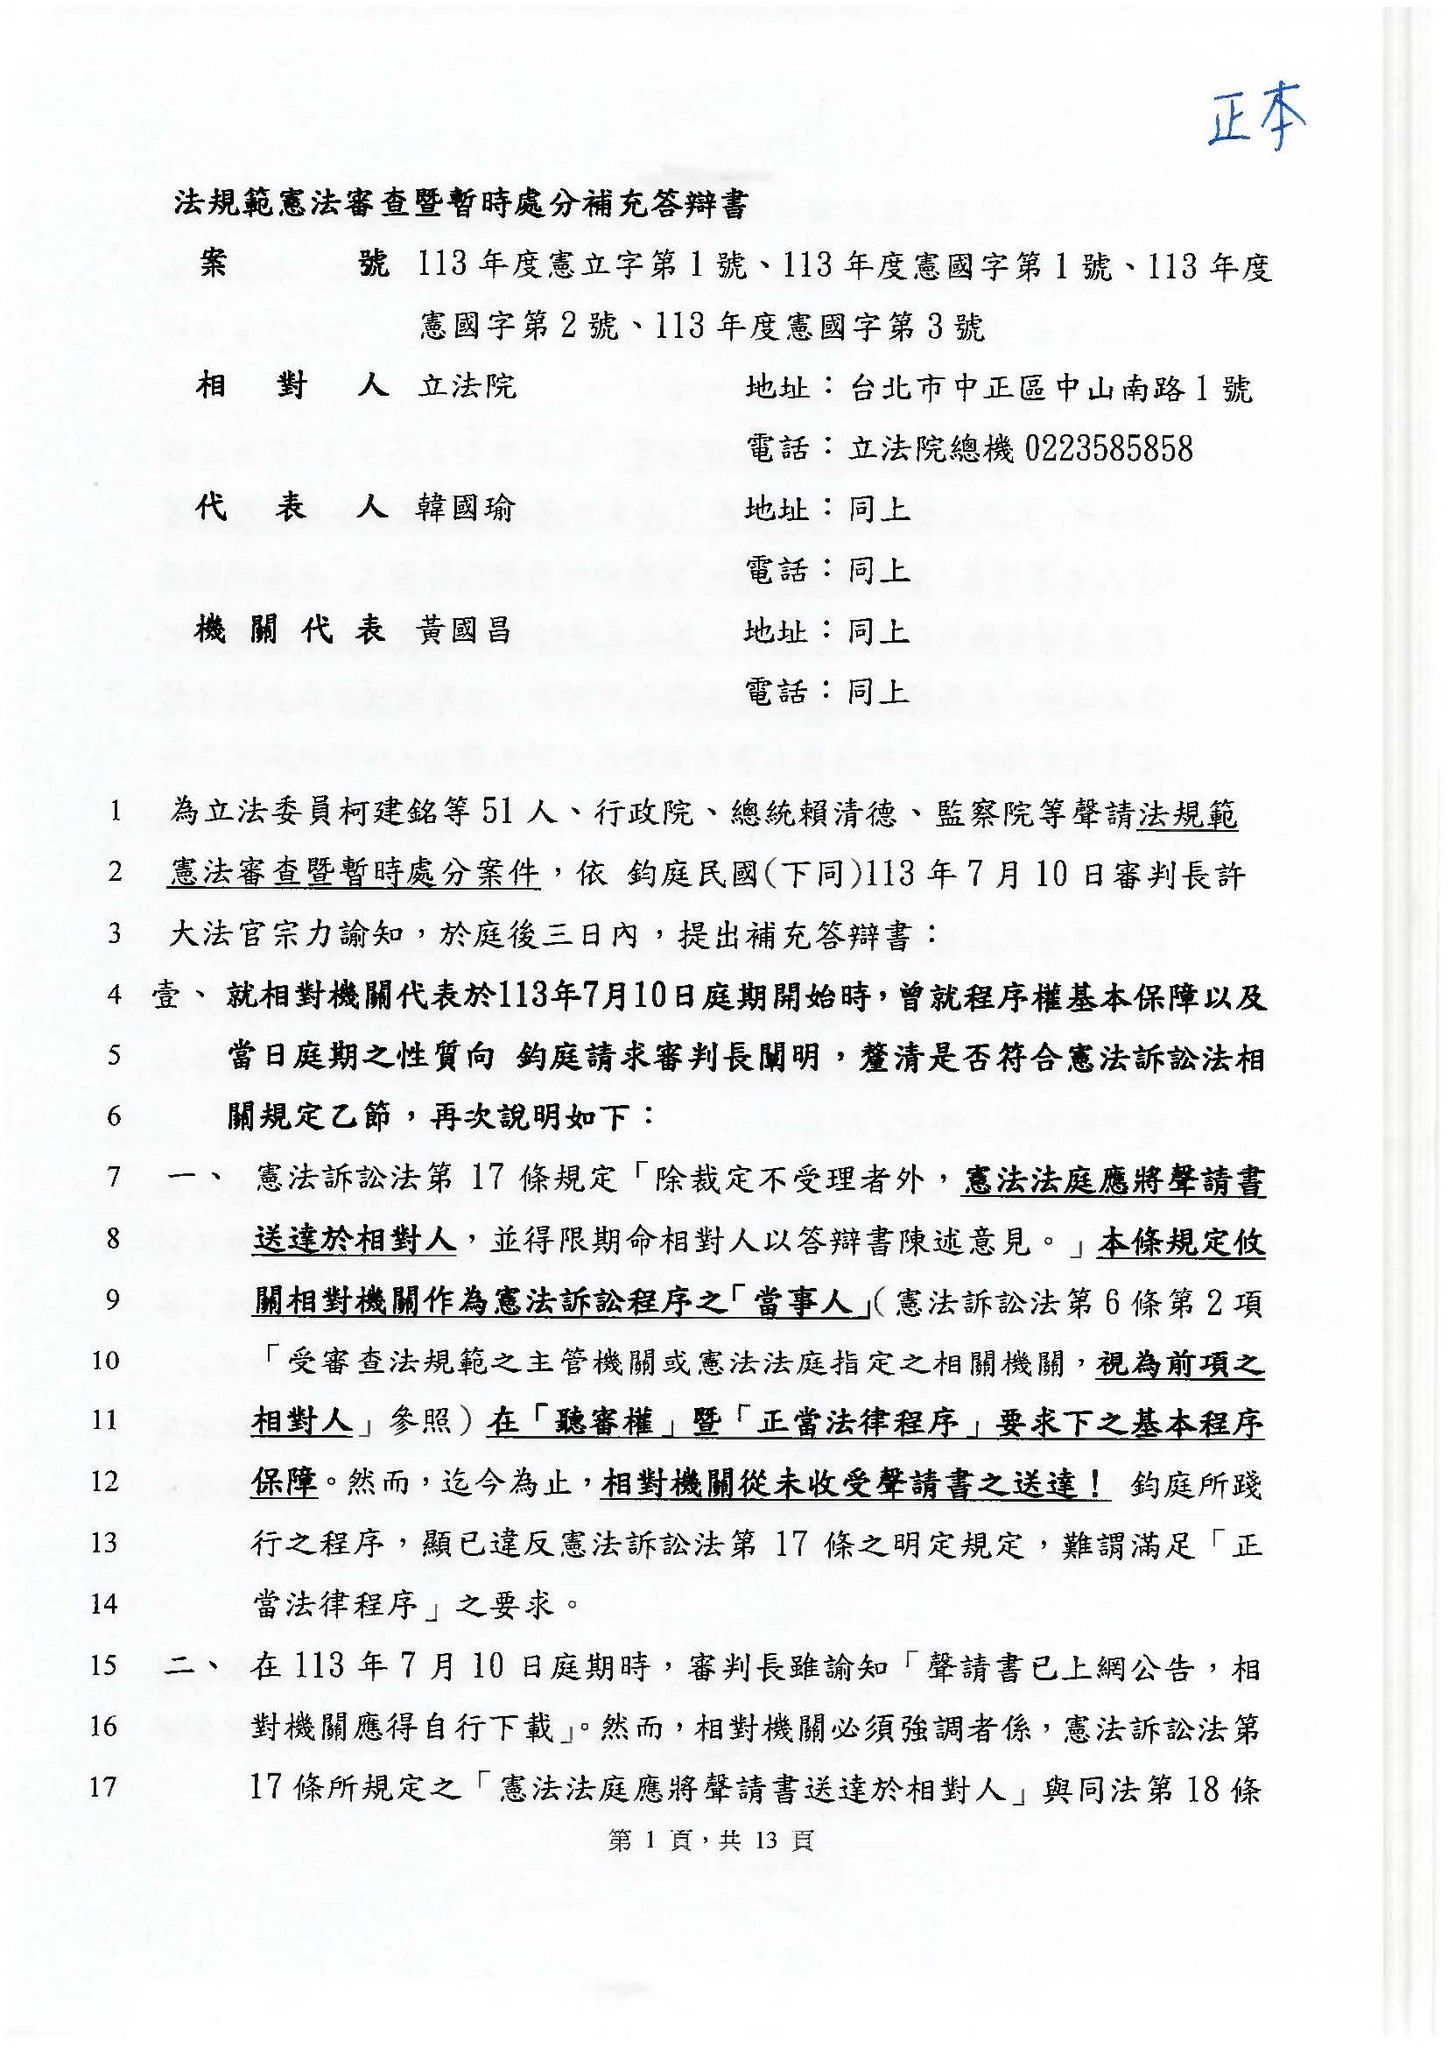 [新聞] 黃國昌用6頁談「反質詢」定義　拿5綠委